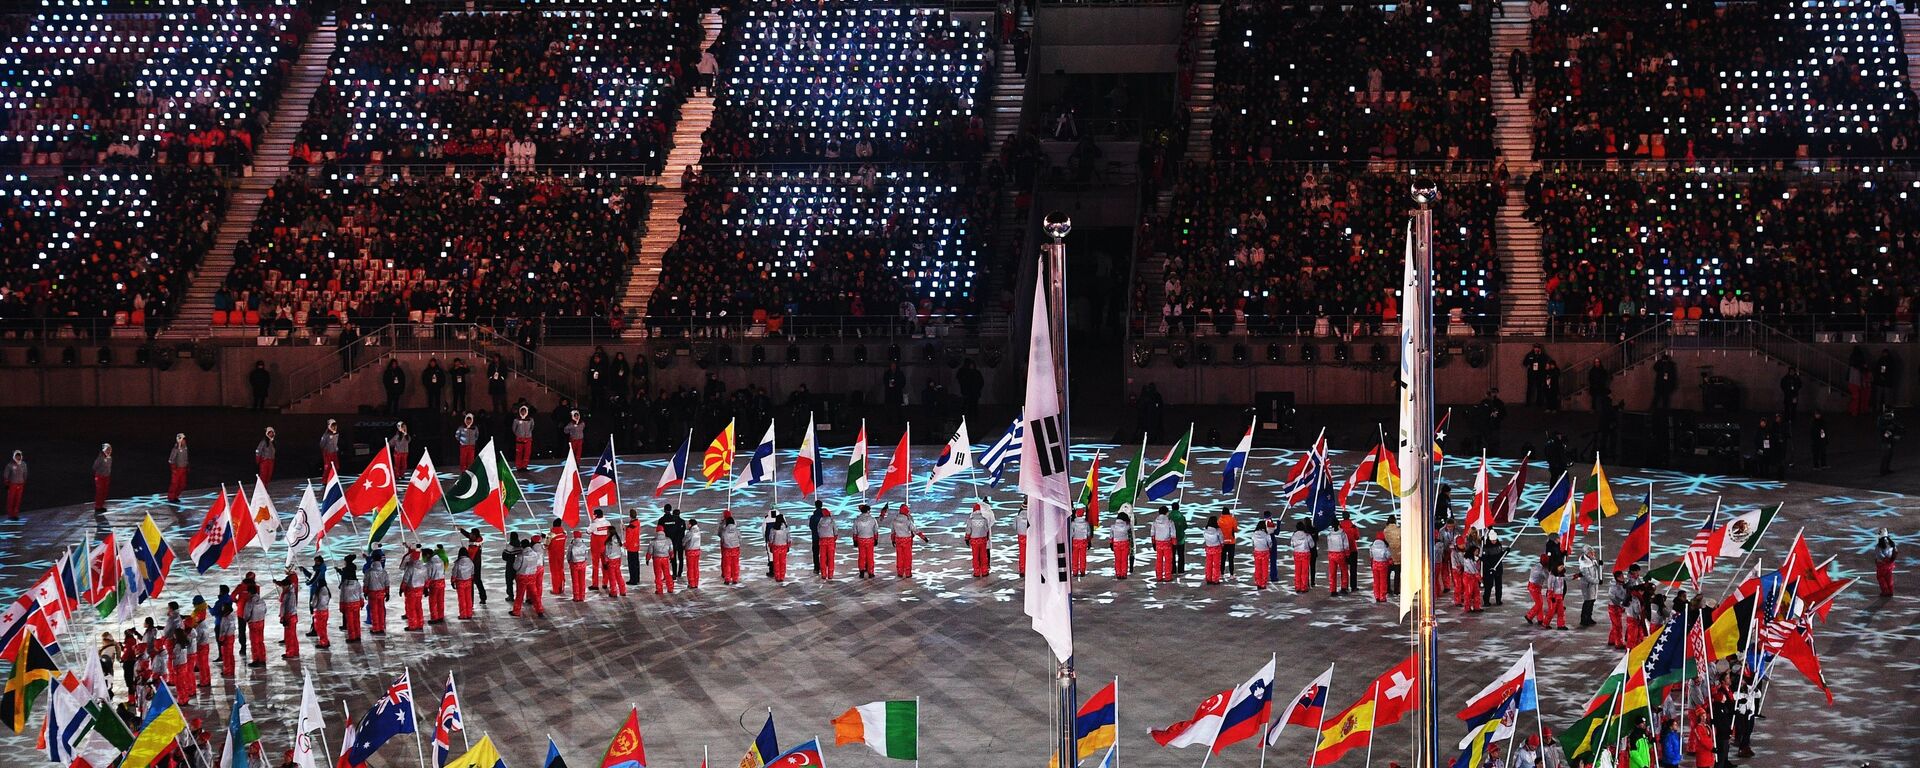 Церемония закрытия XXIII зимних Олимпийских игр в Пхенчхане - Sputnik Абхазия, 1920, 24.10.2018